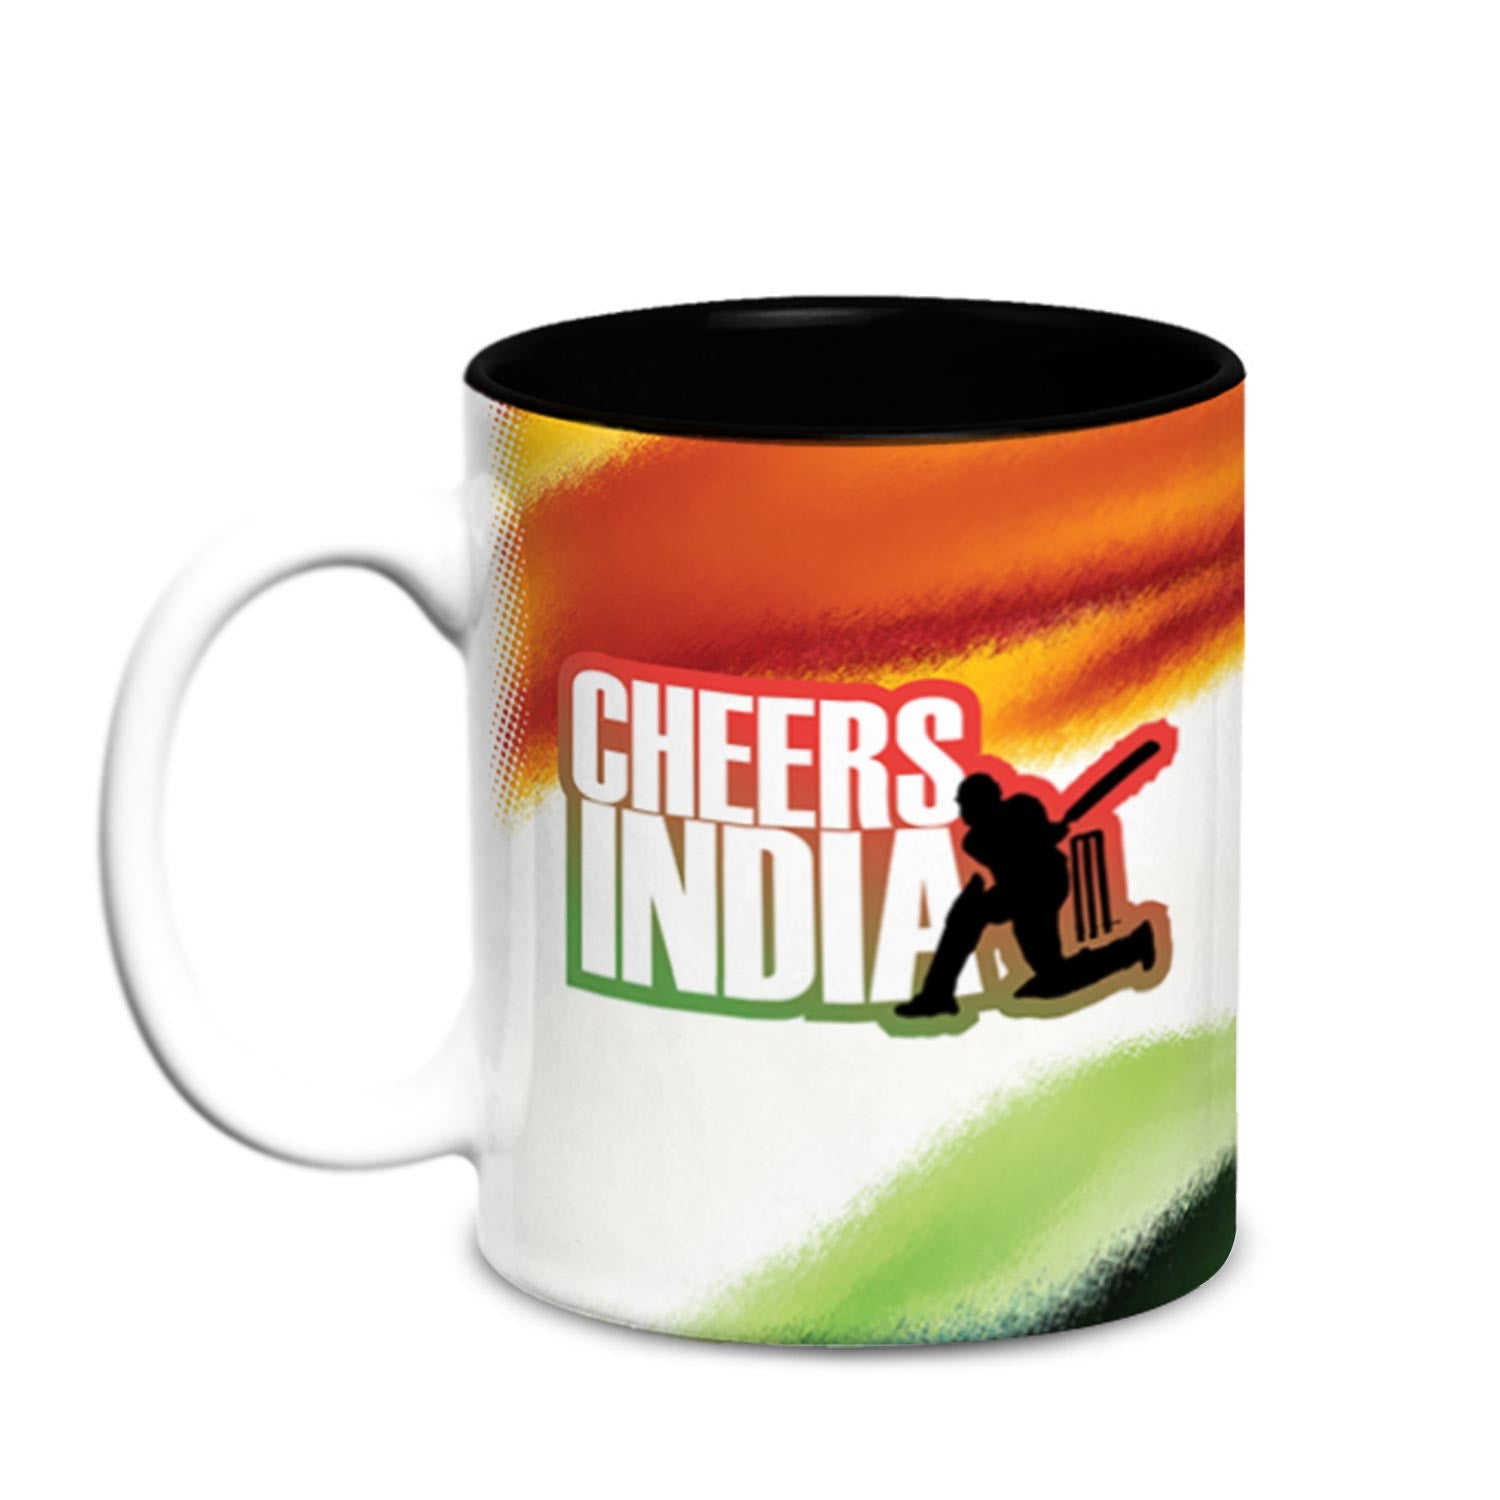 cheers-india-ceramic-mug-350ml